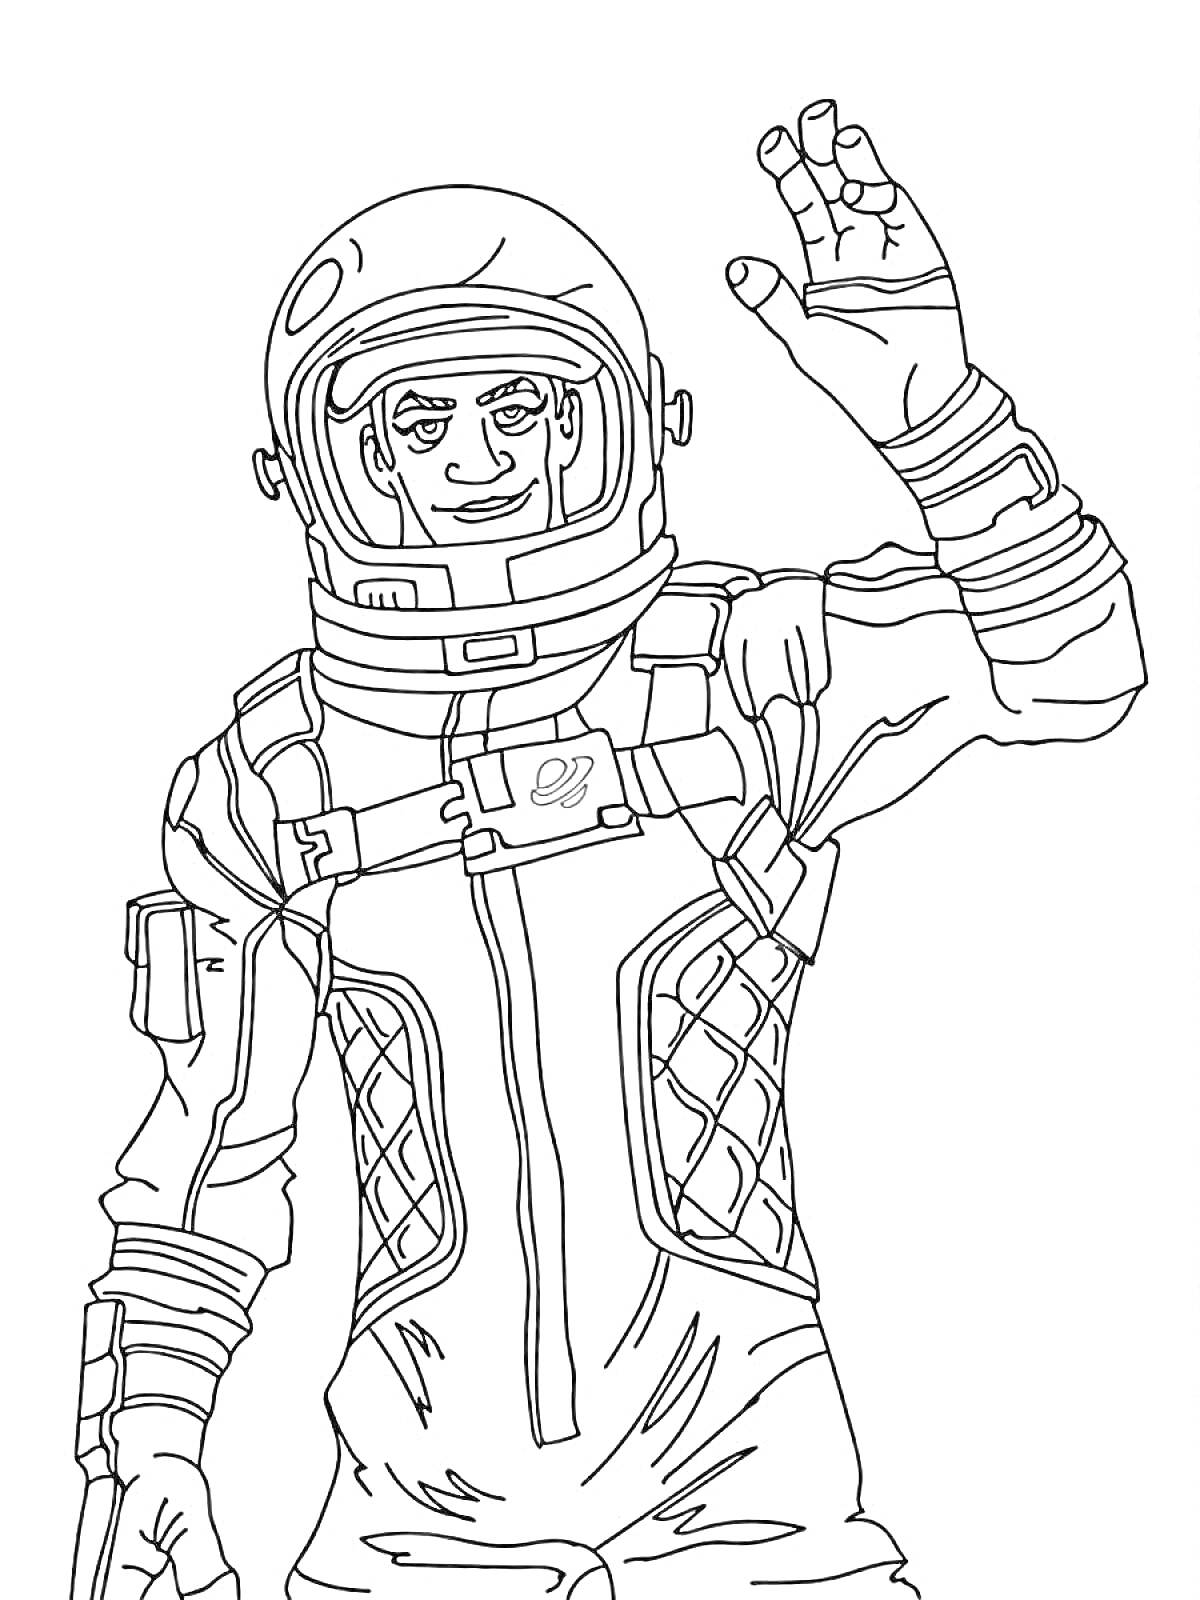 Раскраска Картинка для раскраски с персонажем Fortnite в космическом костюме, поднимающим руку в жесте приветствия.